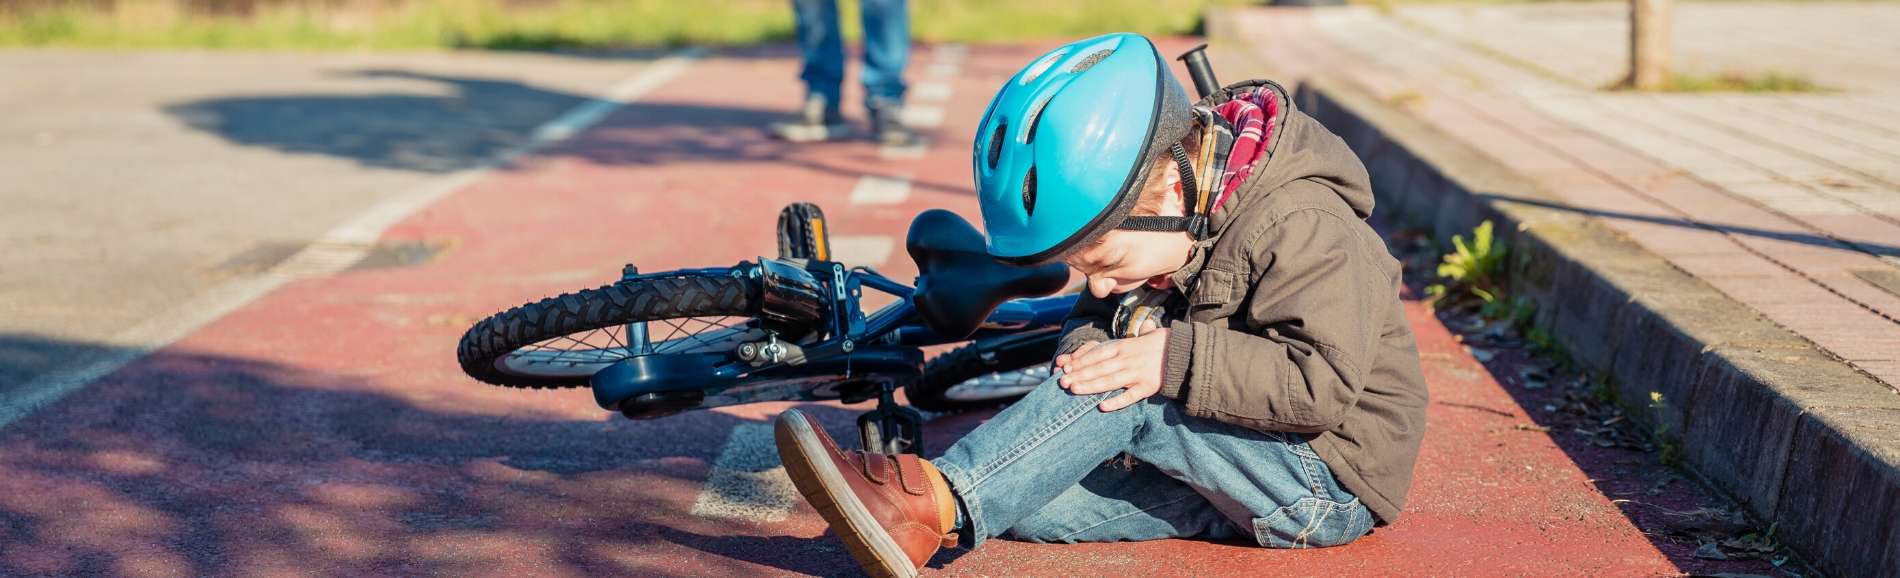 Young boy wearing helmet who's fallen off his bike